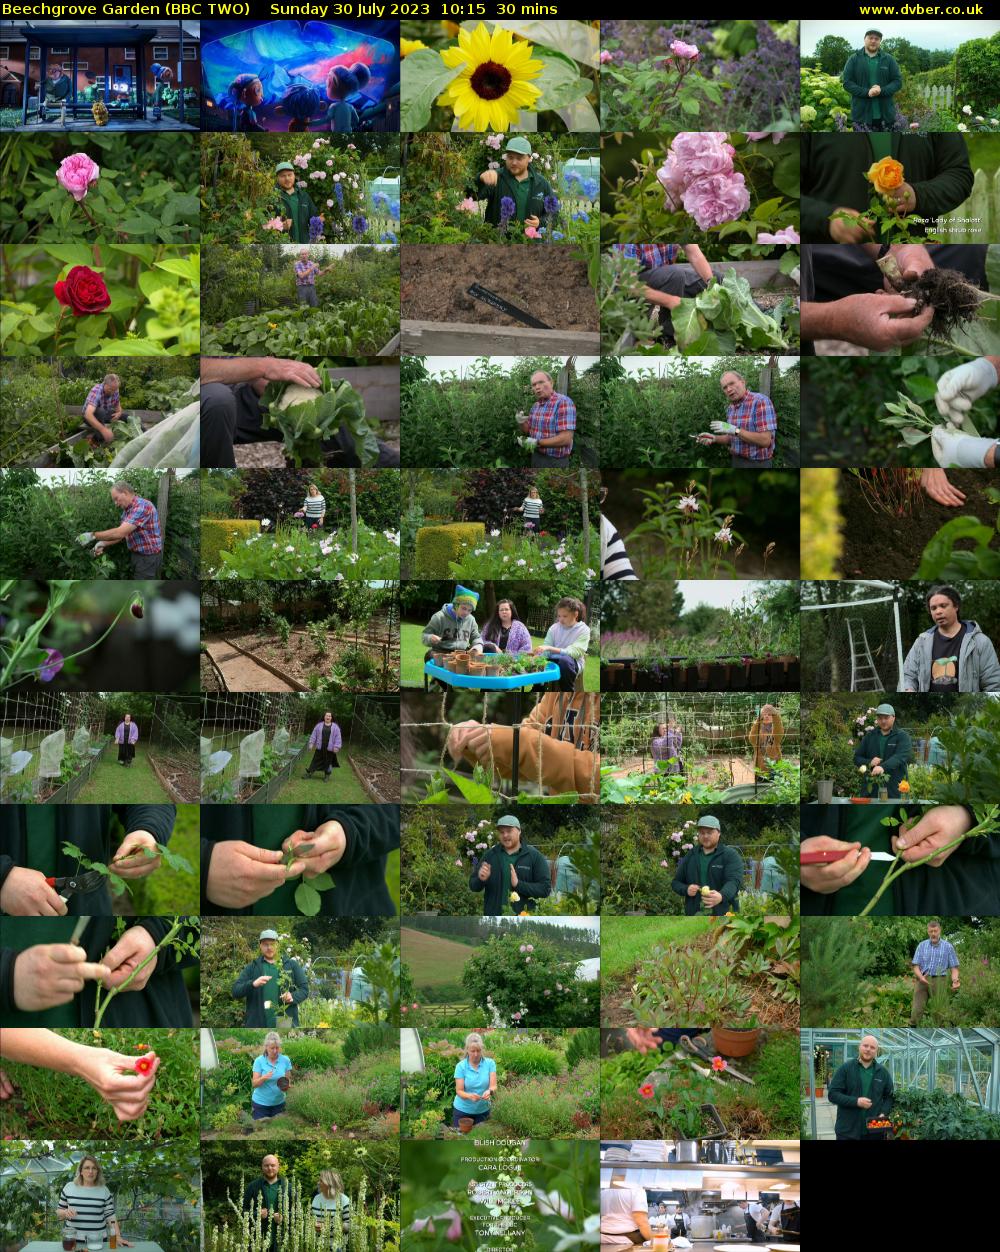 Beechgrove Garden (BBC TWO) Sunday 30 July 2023 10:15 - 10:45